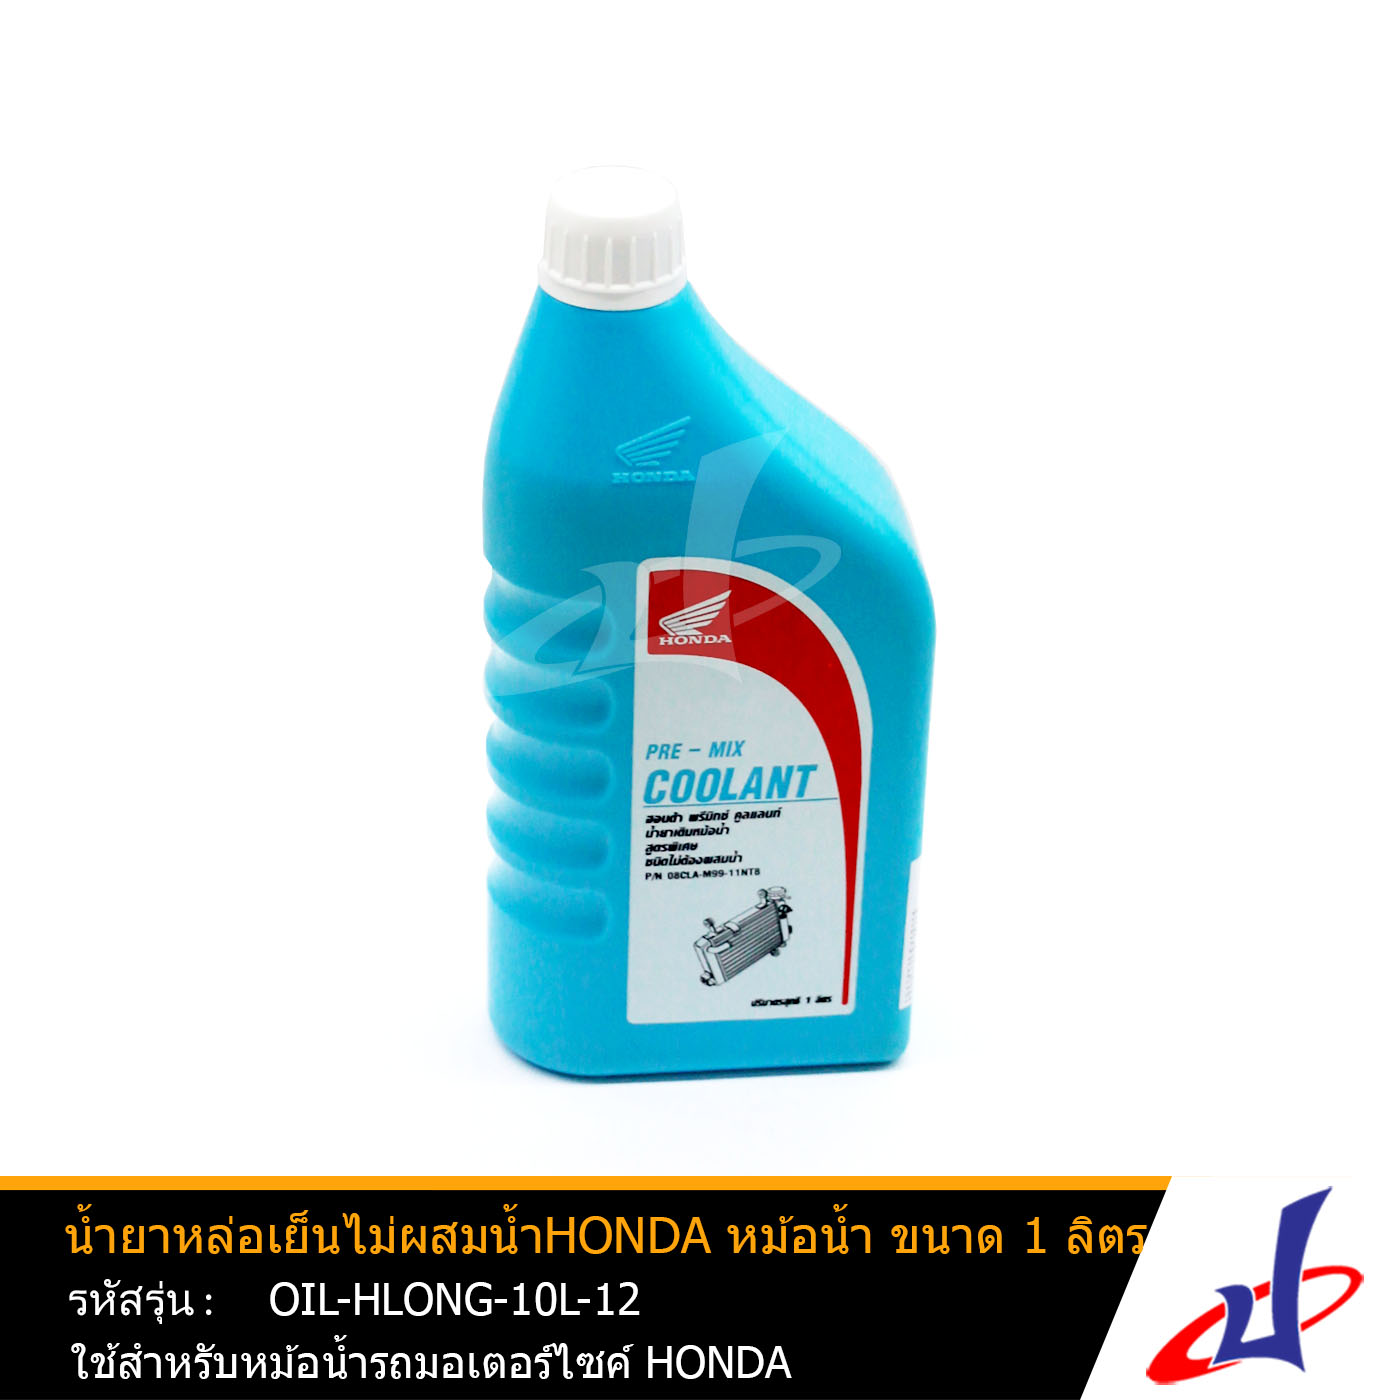 น้ำยาหม้อน้ำ น้ำยาหล่อเย็นไม่ผสมน้ำ ฮอนด้า หม้อน้ำ ขนาด 1 ลิตร ใช้สำหรับหม้อน้ำรถมอเตอร์ไซค์ ฮอนด้า อะไหล่แท้จากศูนย์ HONDA (OIL-HLONG-10L-12)